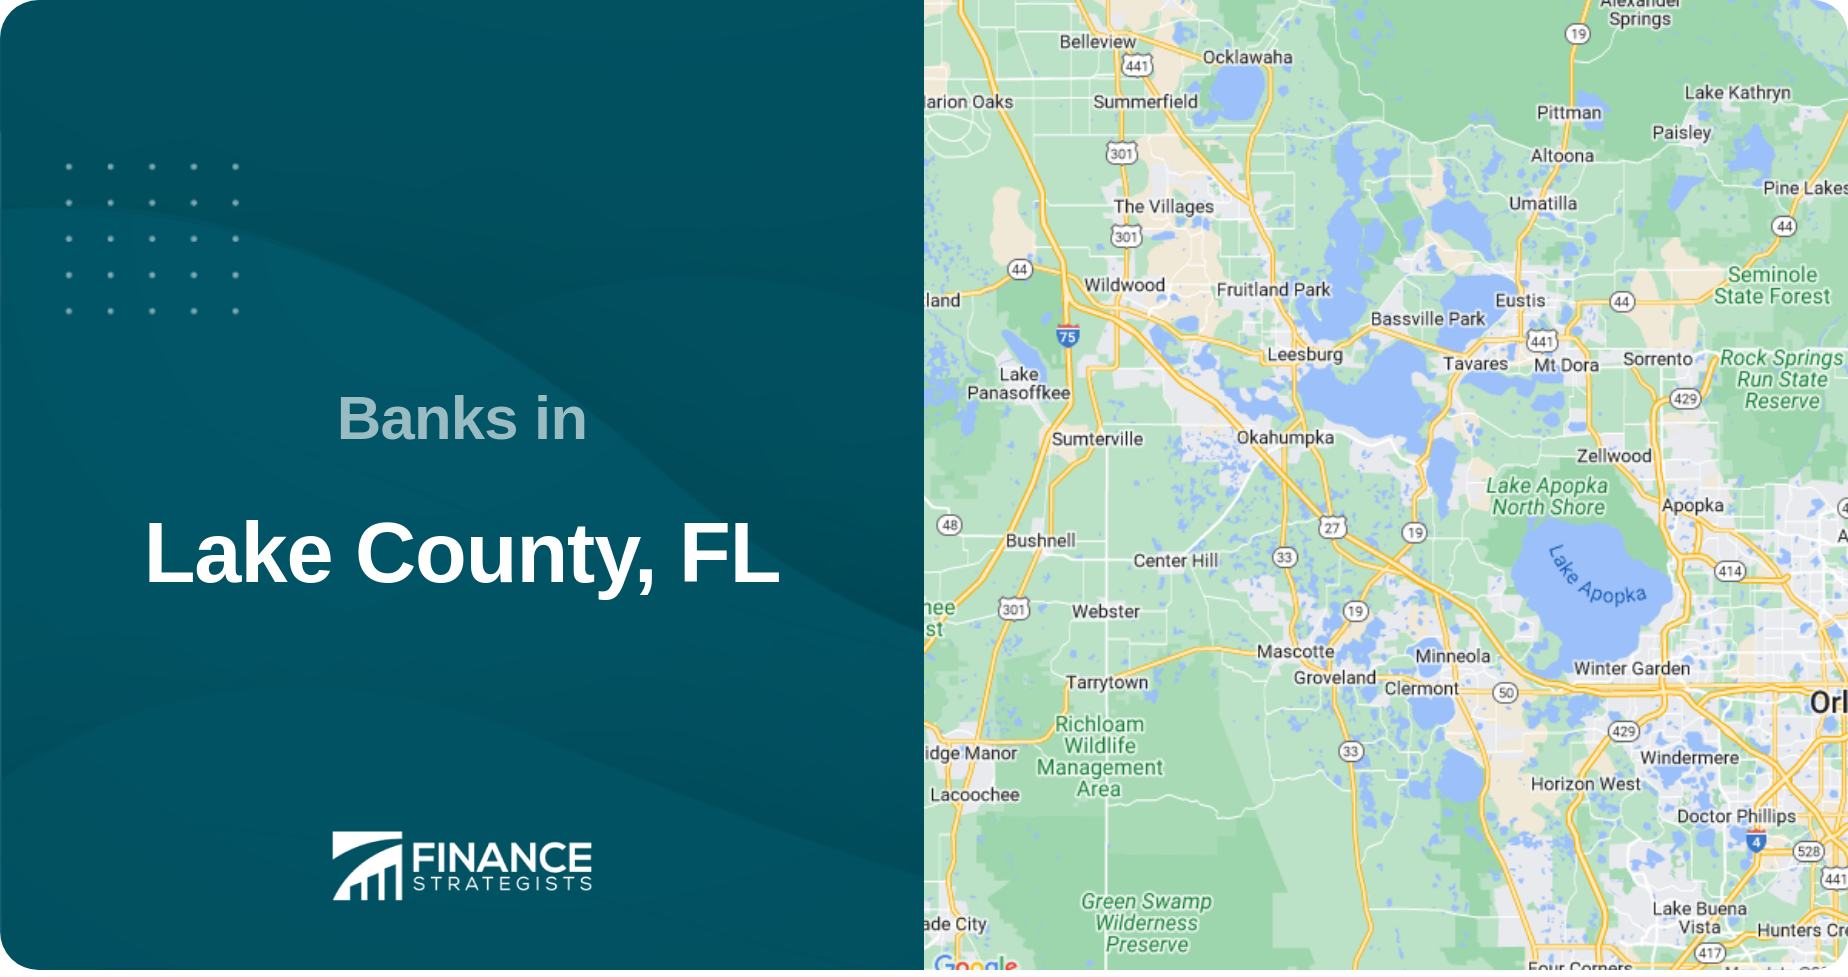 Banks in Lake County, FL